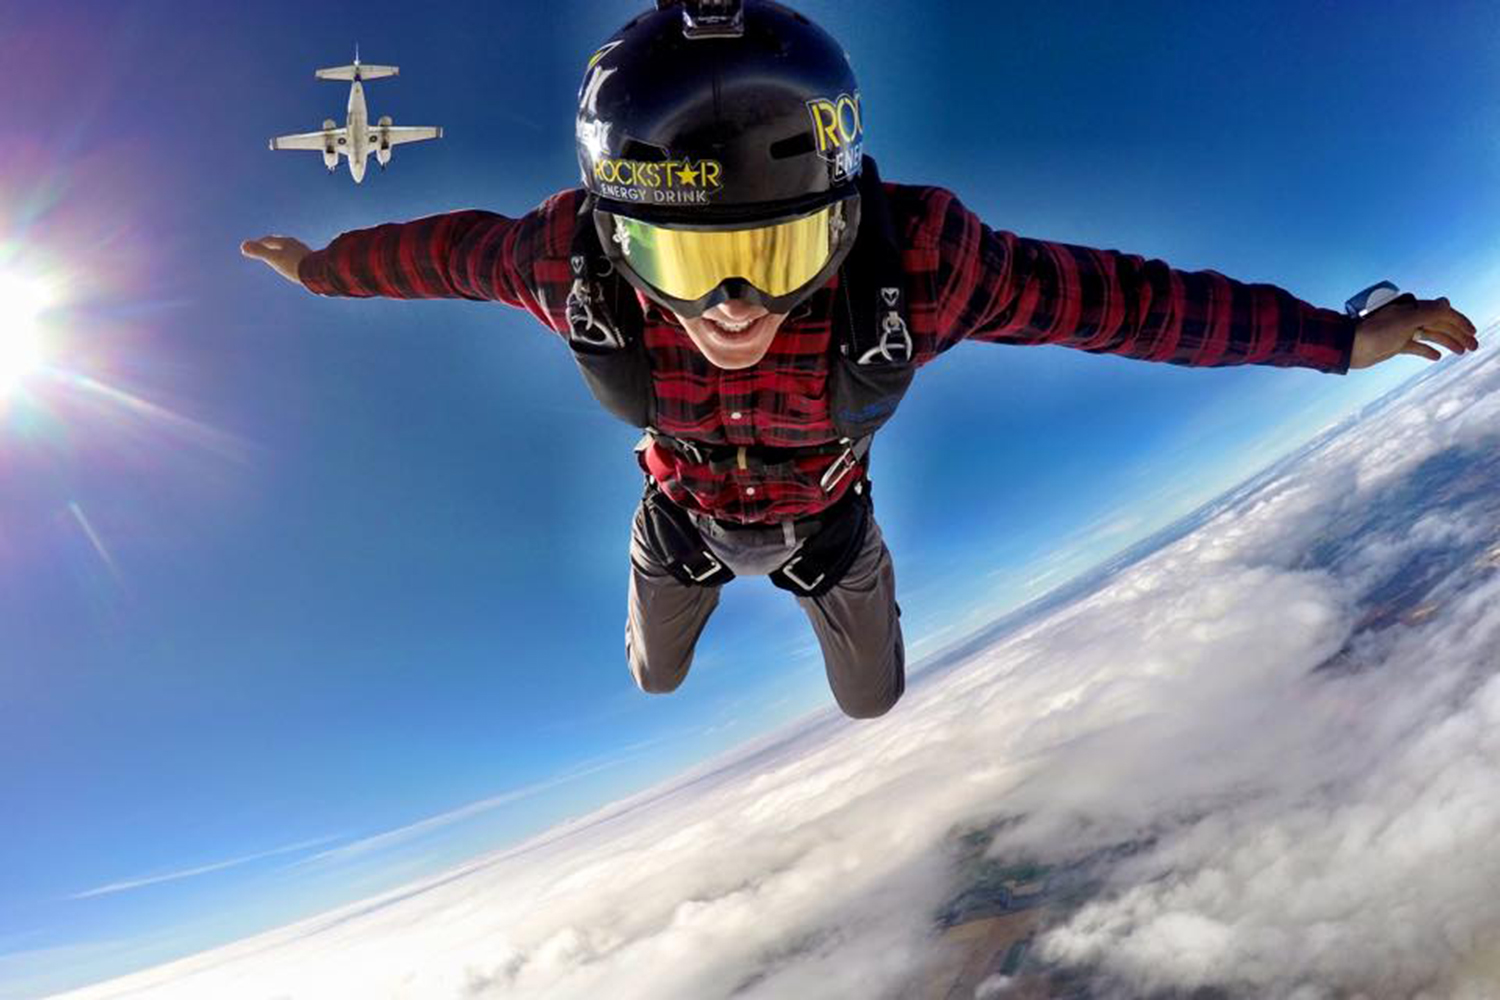 La estrella de MTV, Erik Roner, muere tras saltar en paracaídas